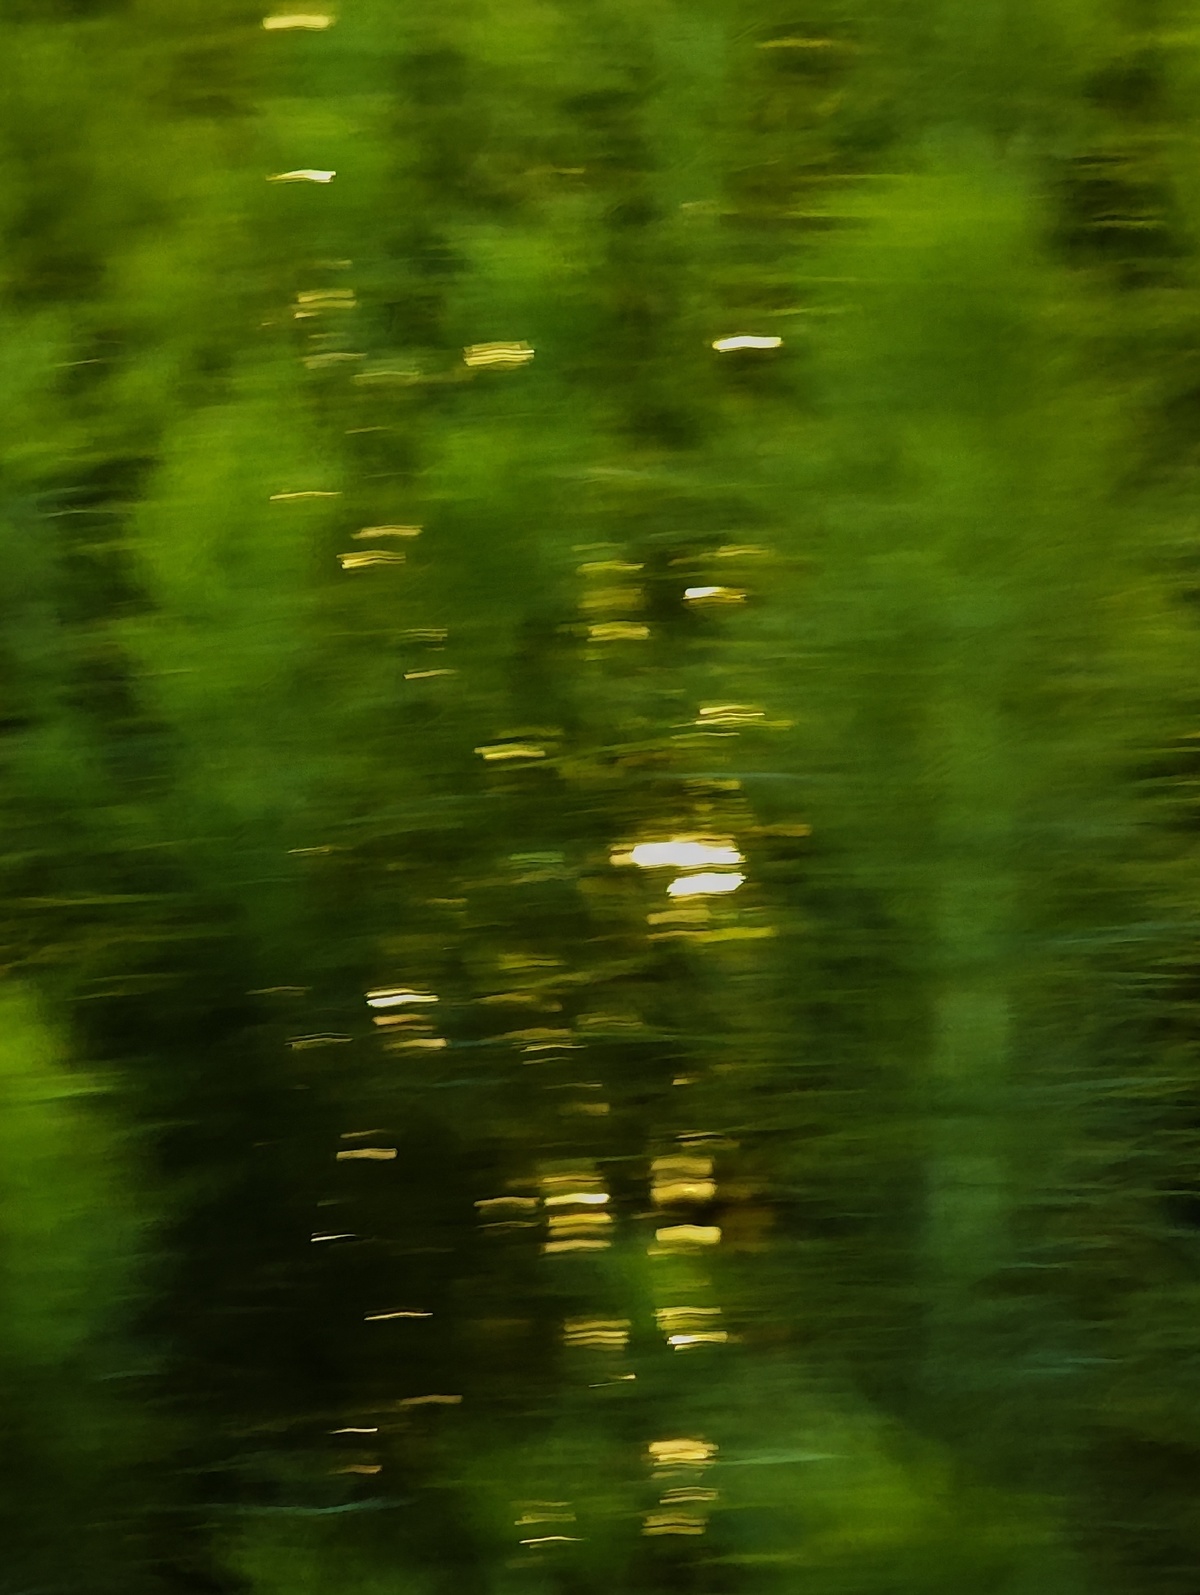 来自移动火车拍摄的一张模糊的绿色森林树木图片